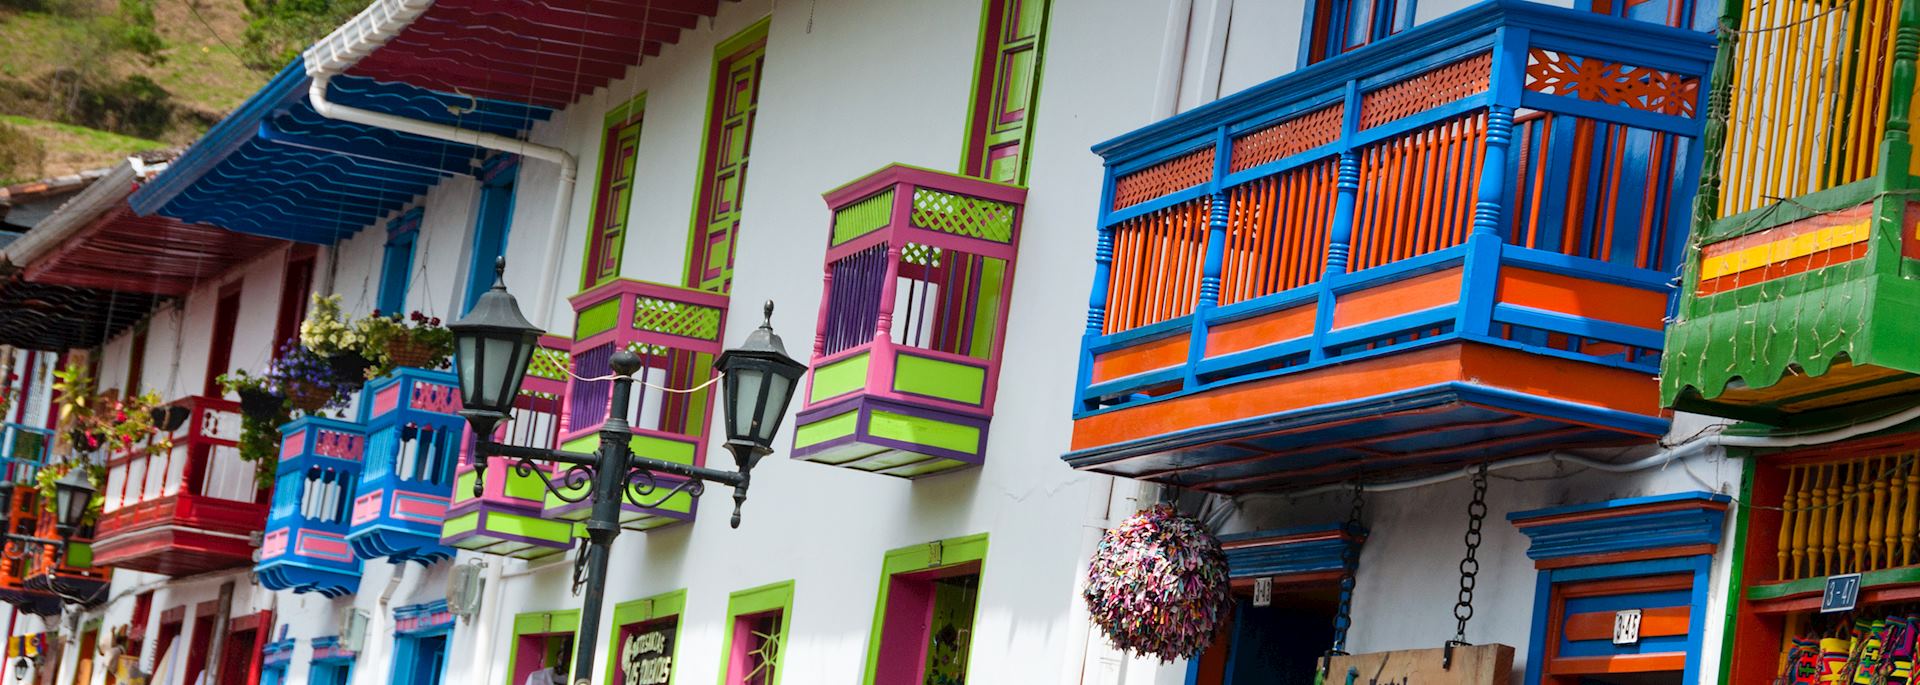 Colourful houses in Salento, near Bogotá